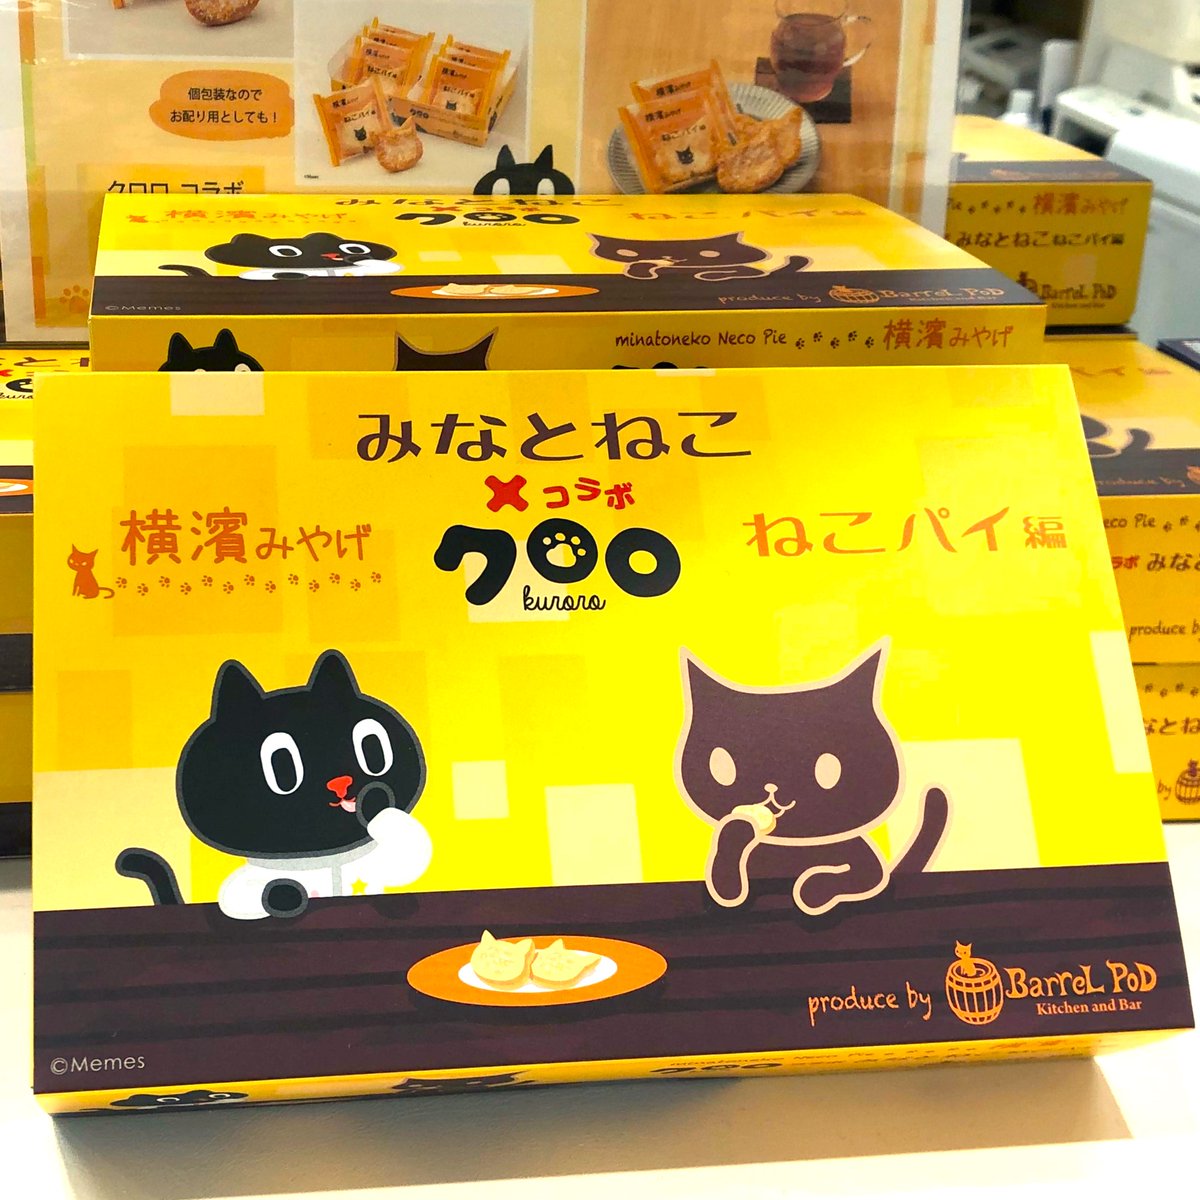 横浜の黒猫キャラクター みなとねこ と 台湾の人気キャラクター クロロ がコラボした ねこパイ編 人気です バレルポッド さんがプロデュースし ガトー ド ボワイヤージュ さんと開発した ねこ型パイ 横濱みやげ におすすめです かながわ屋 そごう